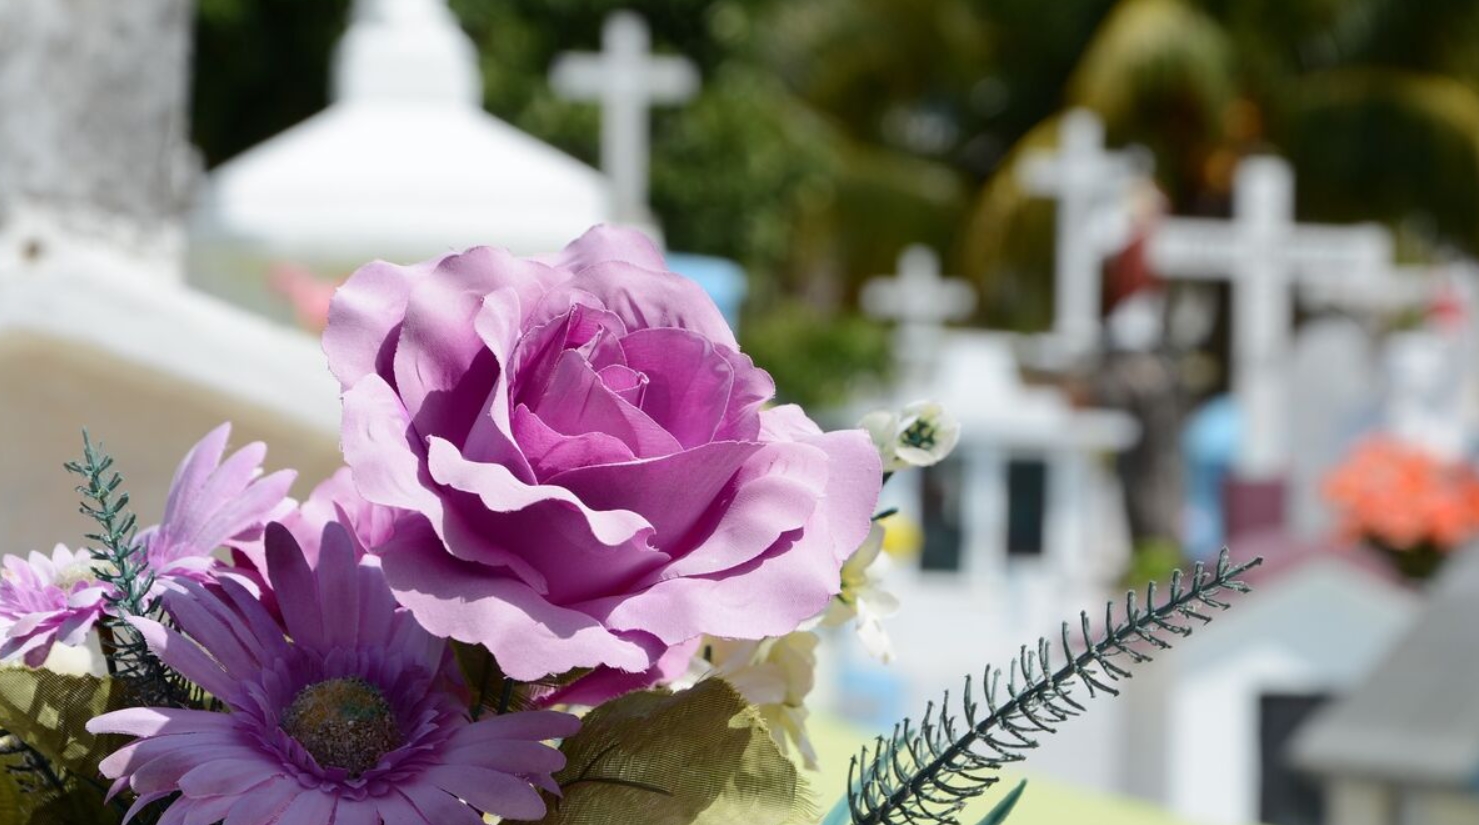 ¿Ramos de flores naturales para cementerio? ¿Flores para lapidas en cementerios?